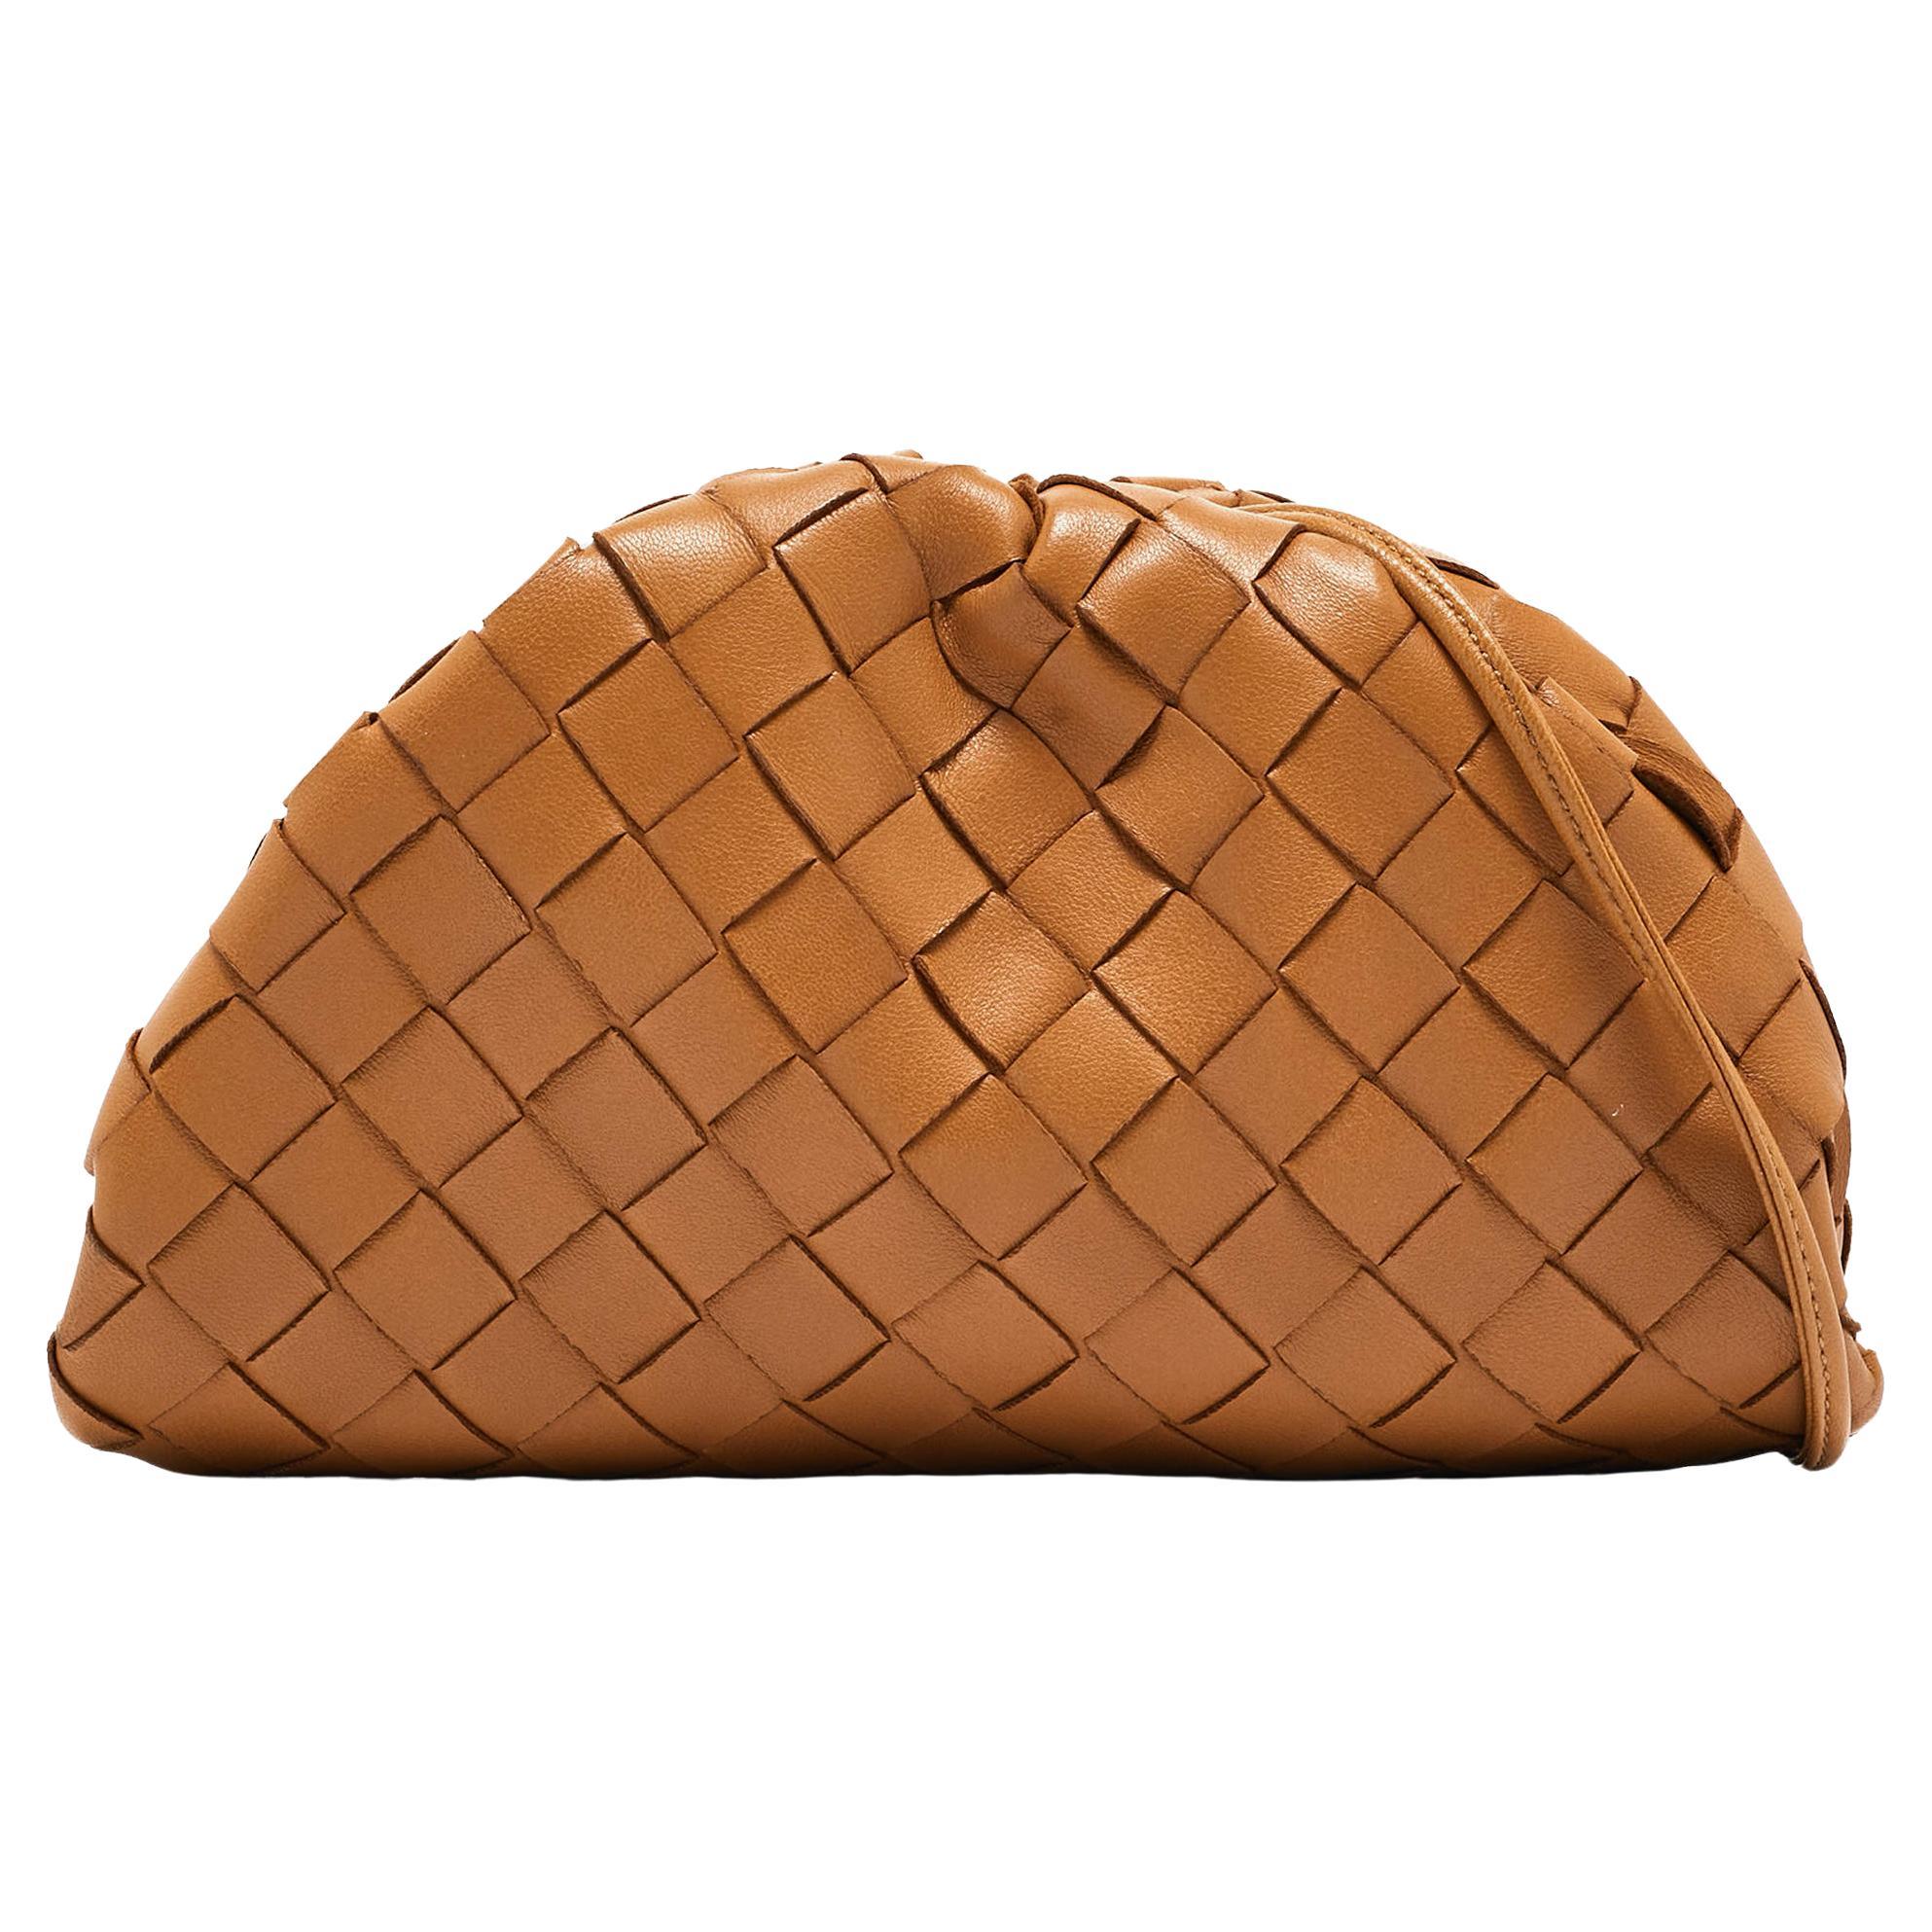 Bottega Veneta Brown Intrecciato Leather Mini The Pouch Bag